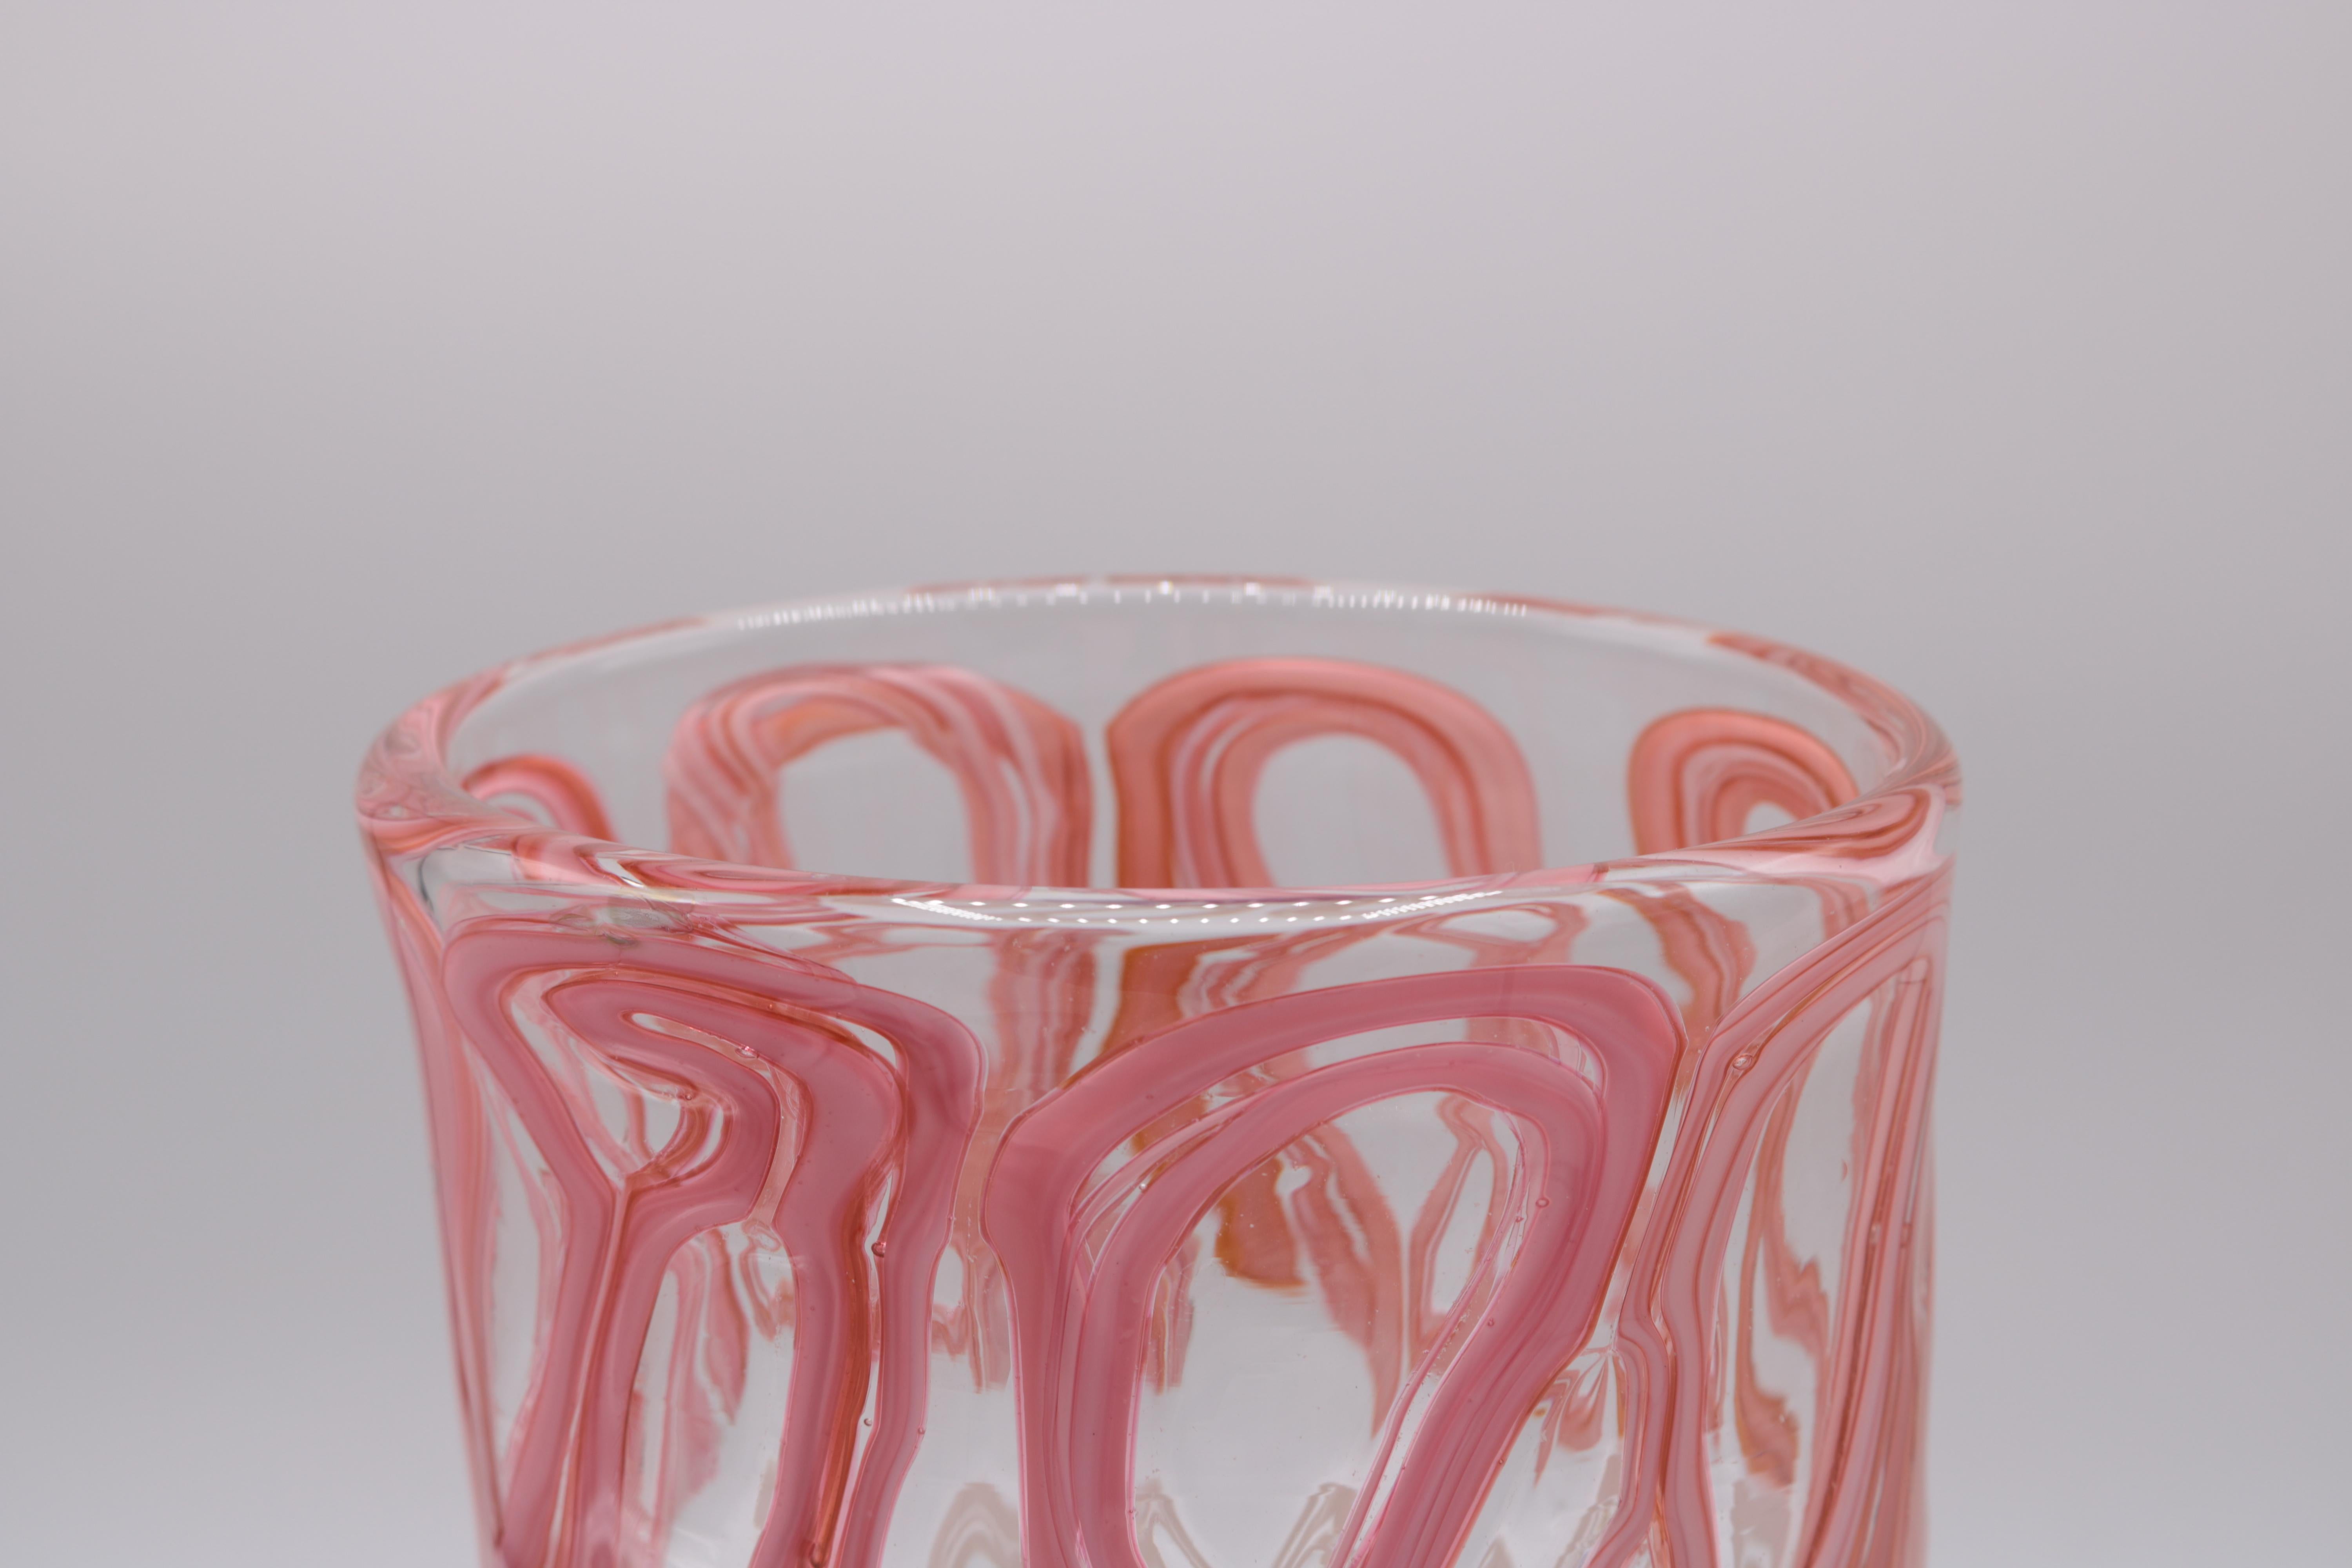 Vase aus Kunstglas von Martin Postch in limitierter Auflage. 
Ovale Form aus klarem Glas mit rosa, weißen und violetten Details. 
Geätzte Signatur auf der Unterseite.